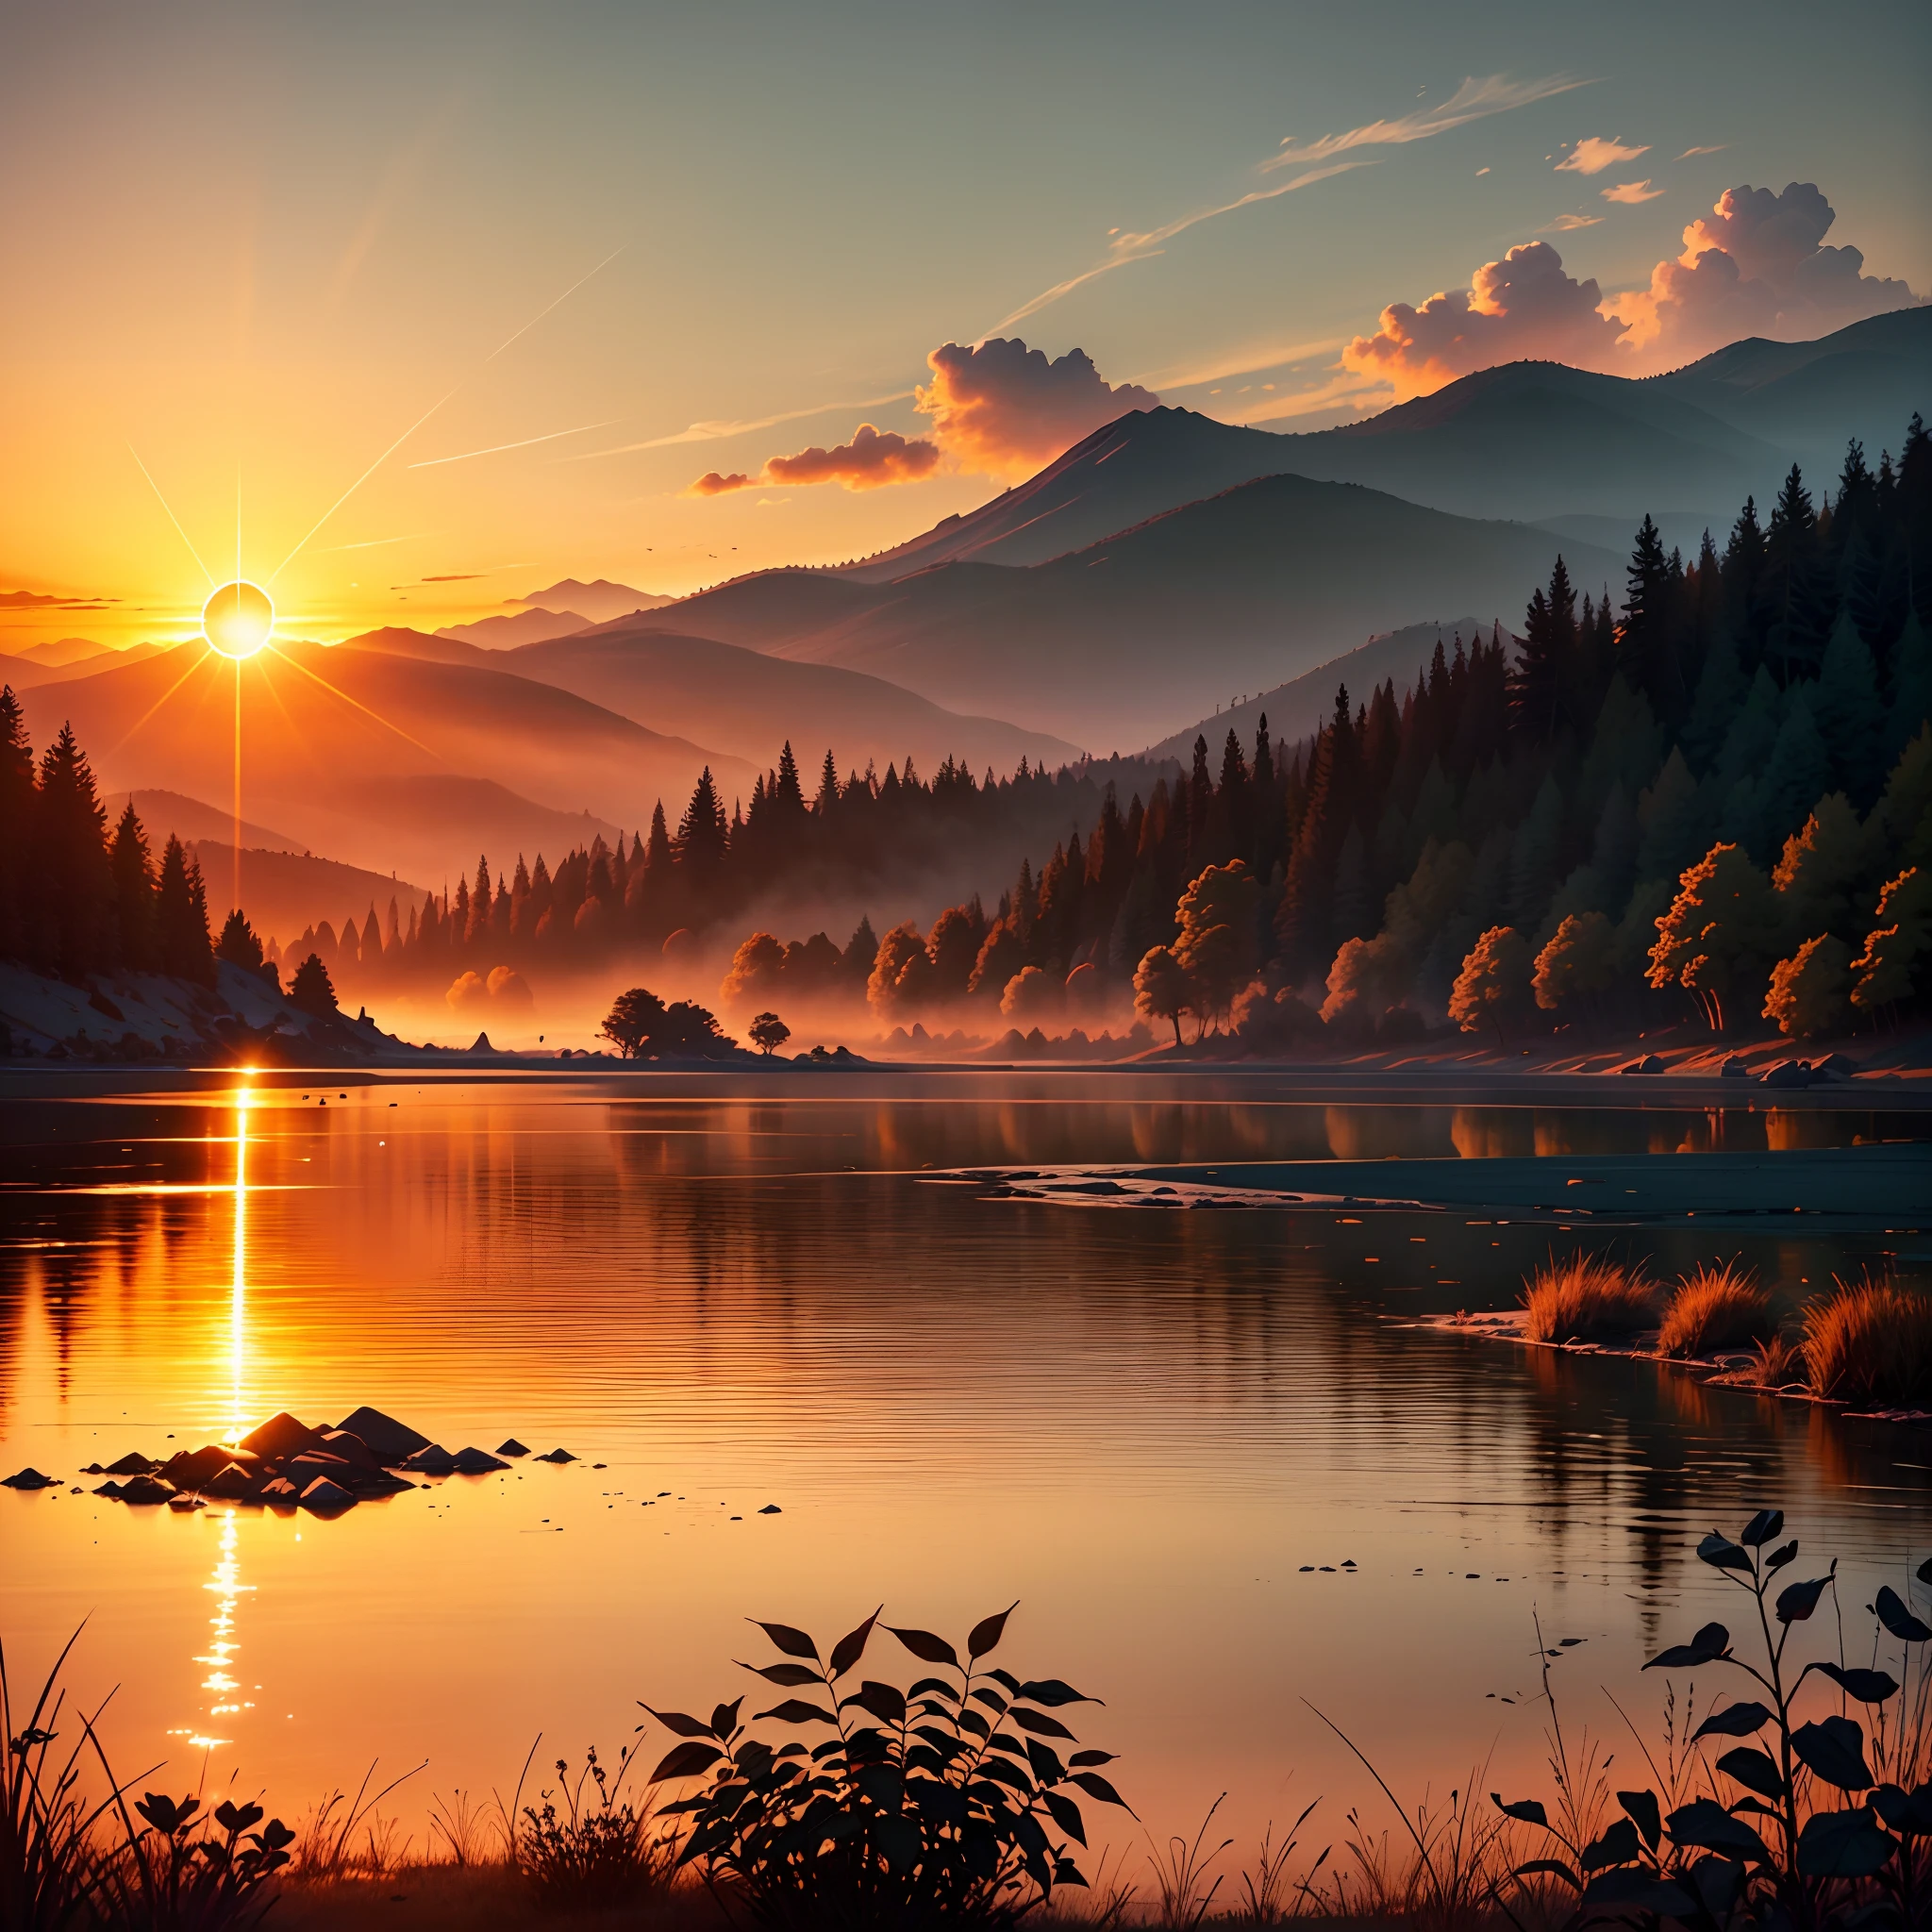 Uma imagem que retrata um nascer do sol radiante sobre uma paisagem tranquila e serena